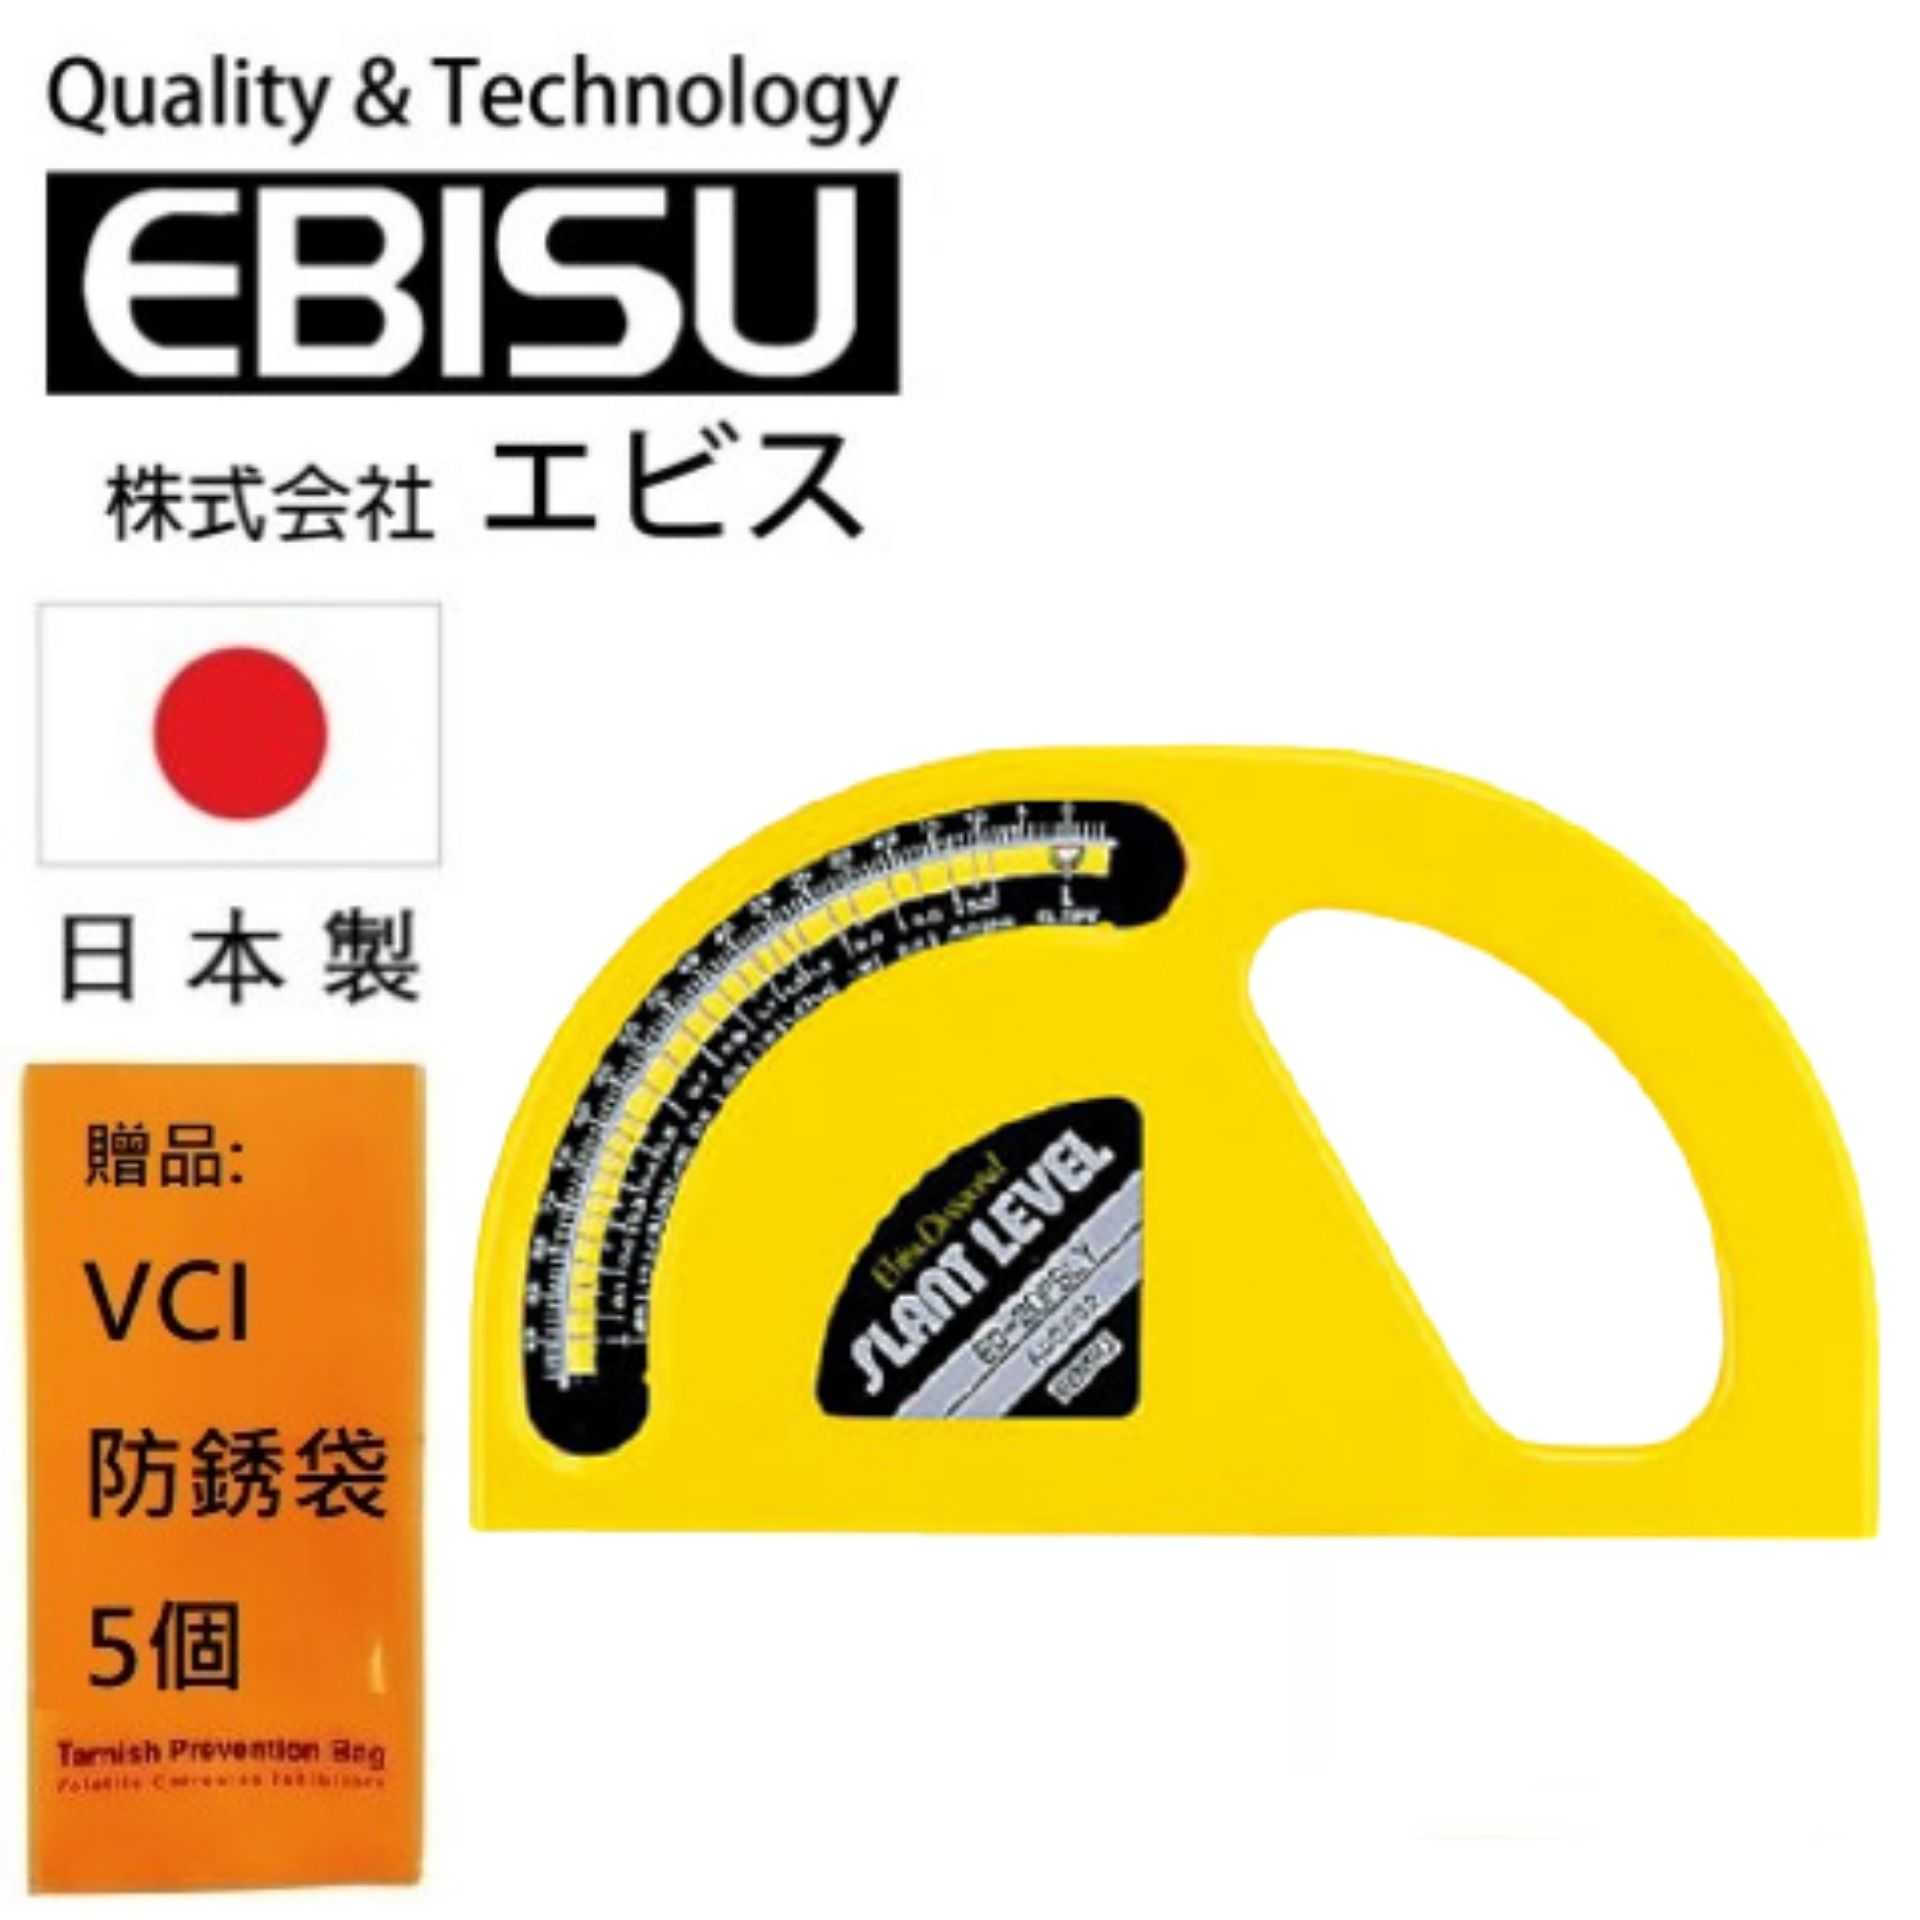 【日本EBISU】氣泡式 角度儀 (附磁) ED-20PSLM 適用於建築.土木.配管.電器